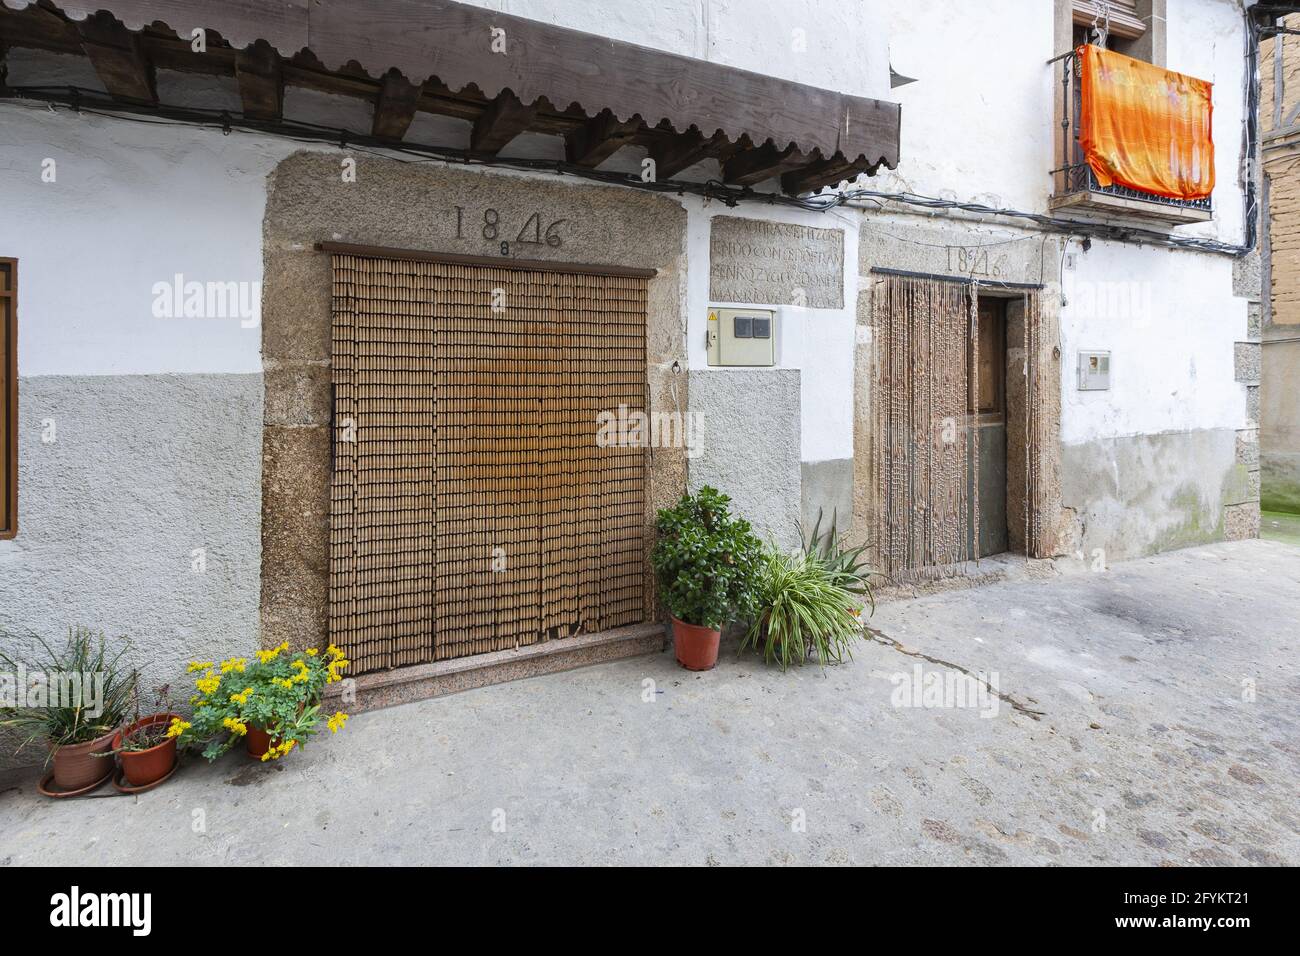 VILLANUEVA DE LA VERA, SPANIEN - 08. März 2021: Villanueva de la Vera, Spanien - 08. März 2021: Tür eines Hauses mit den typischen Vorhängen, um die e zu verhindern Stockfoto